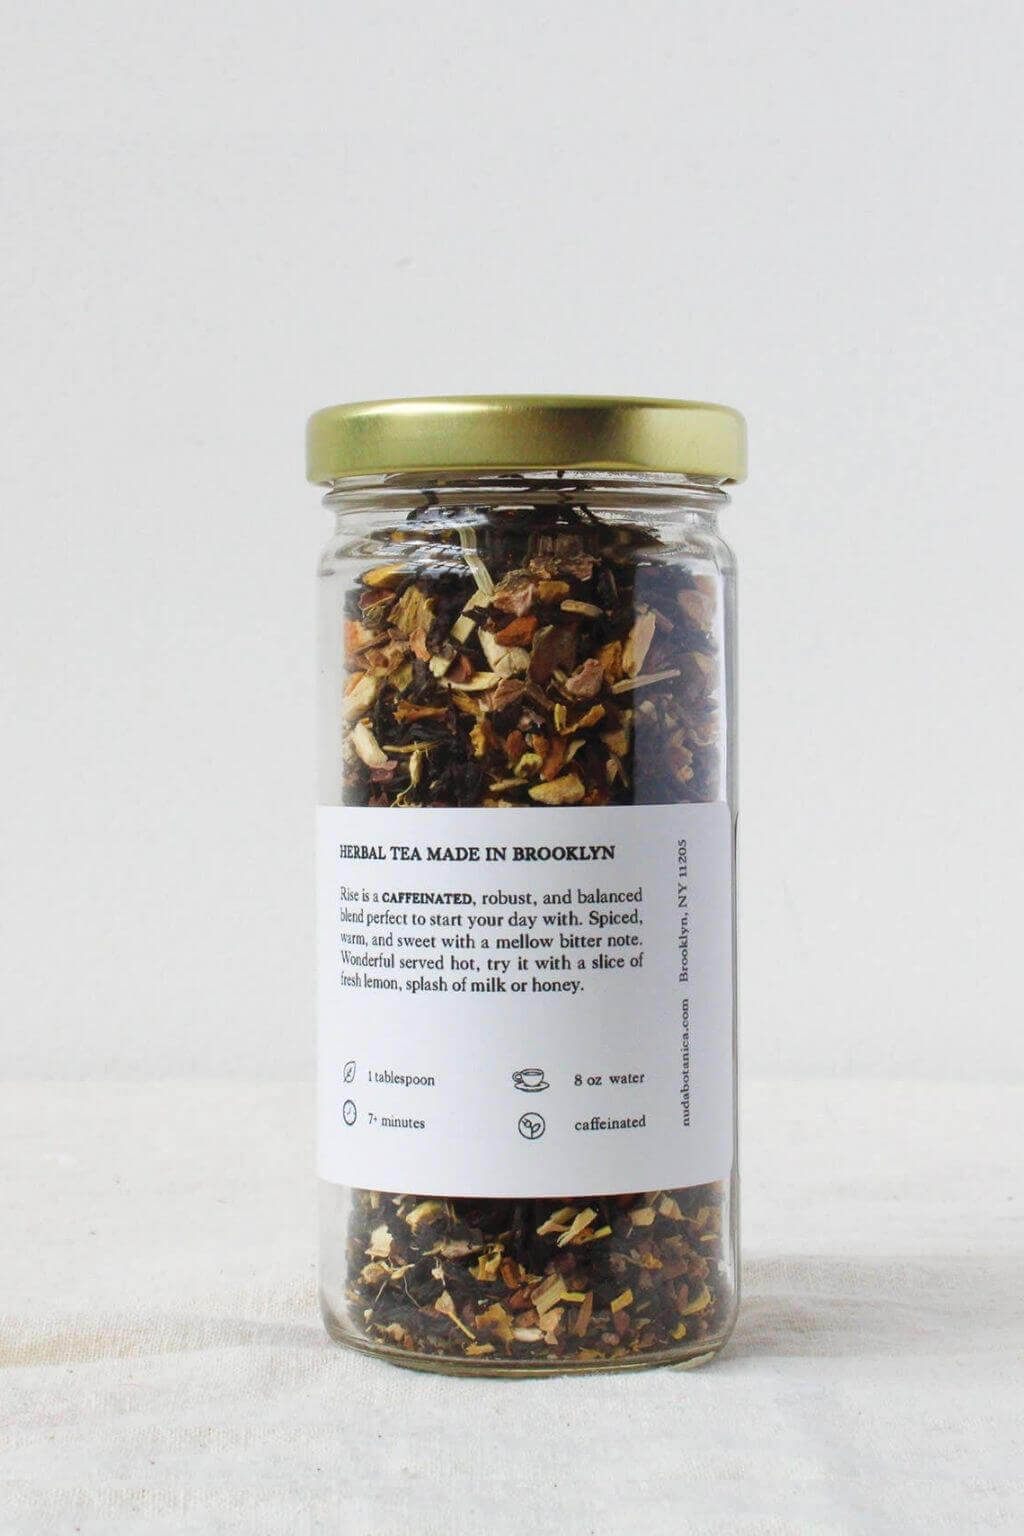 Rise Premium Organic Tea Nuda Botanica